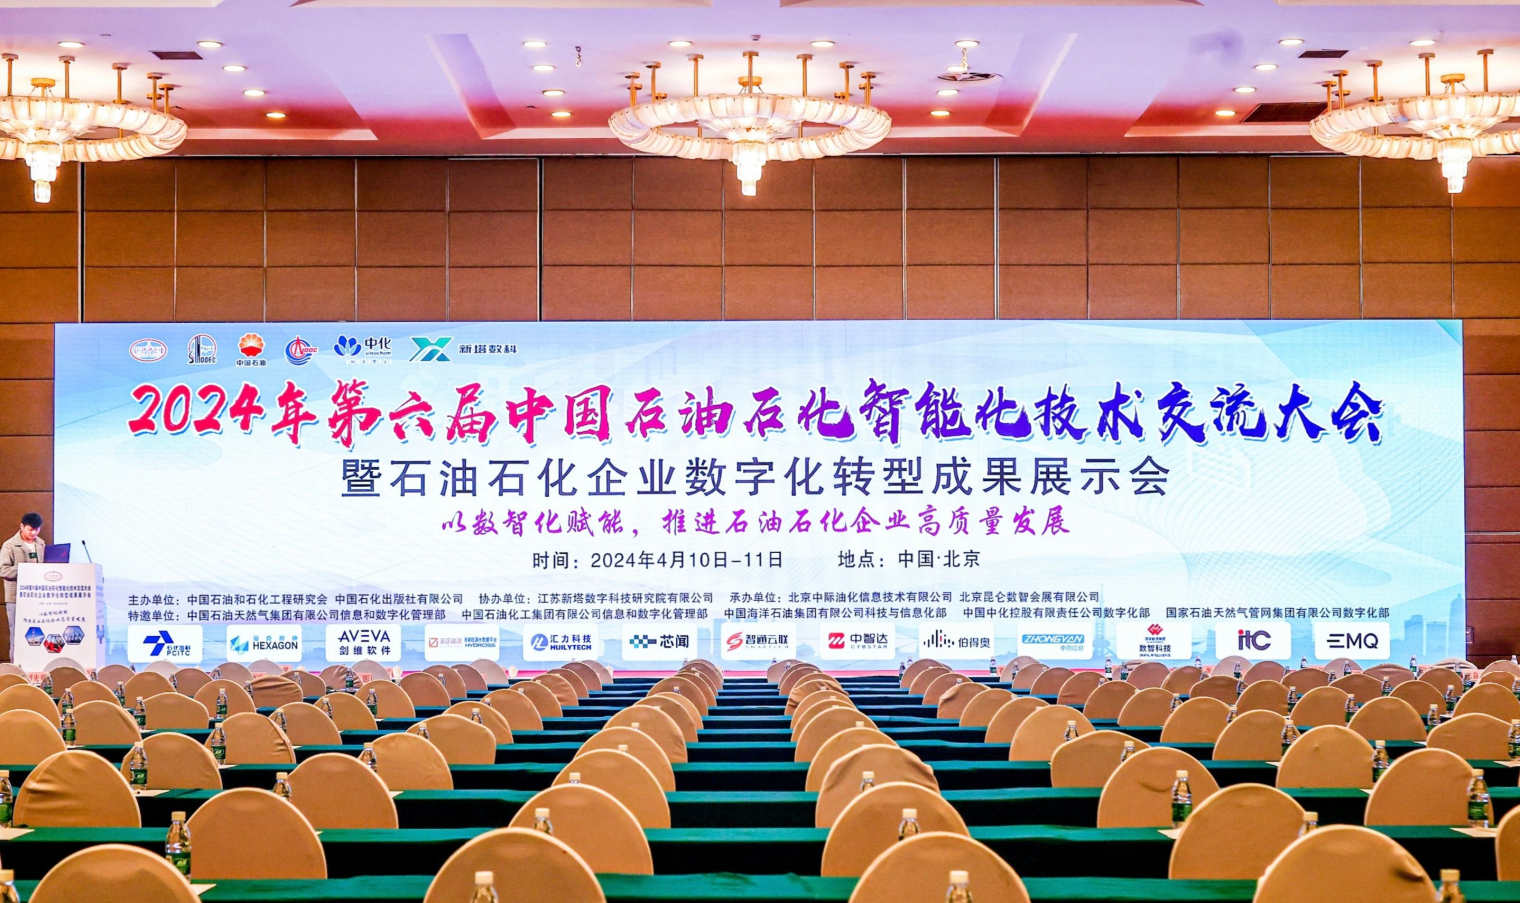 第六届中国石油石化智能化技术交流大会暨石油石化企业数字化转型成果展示会